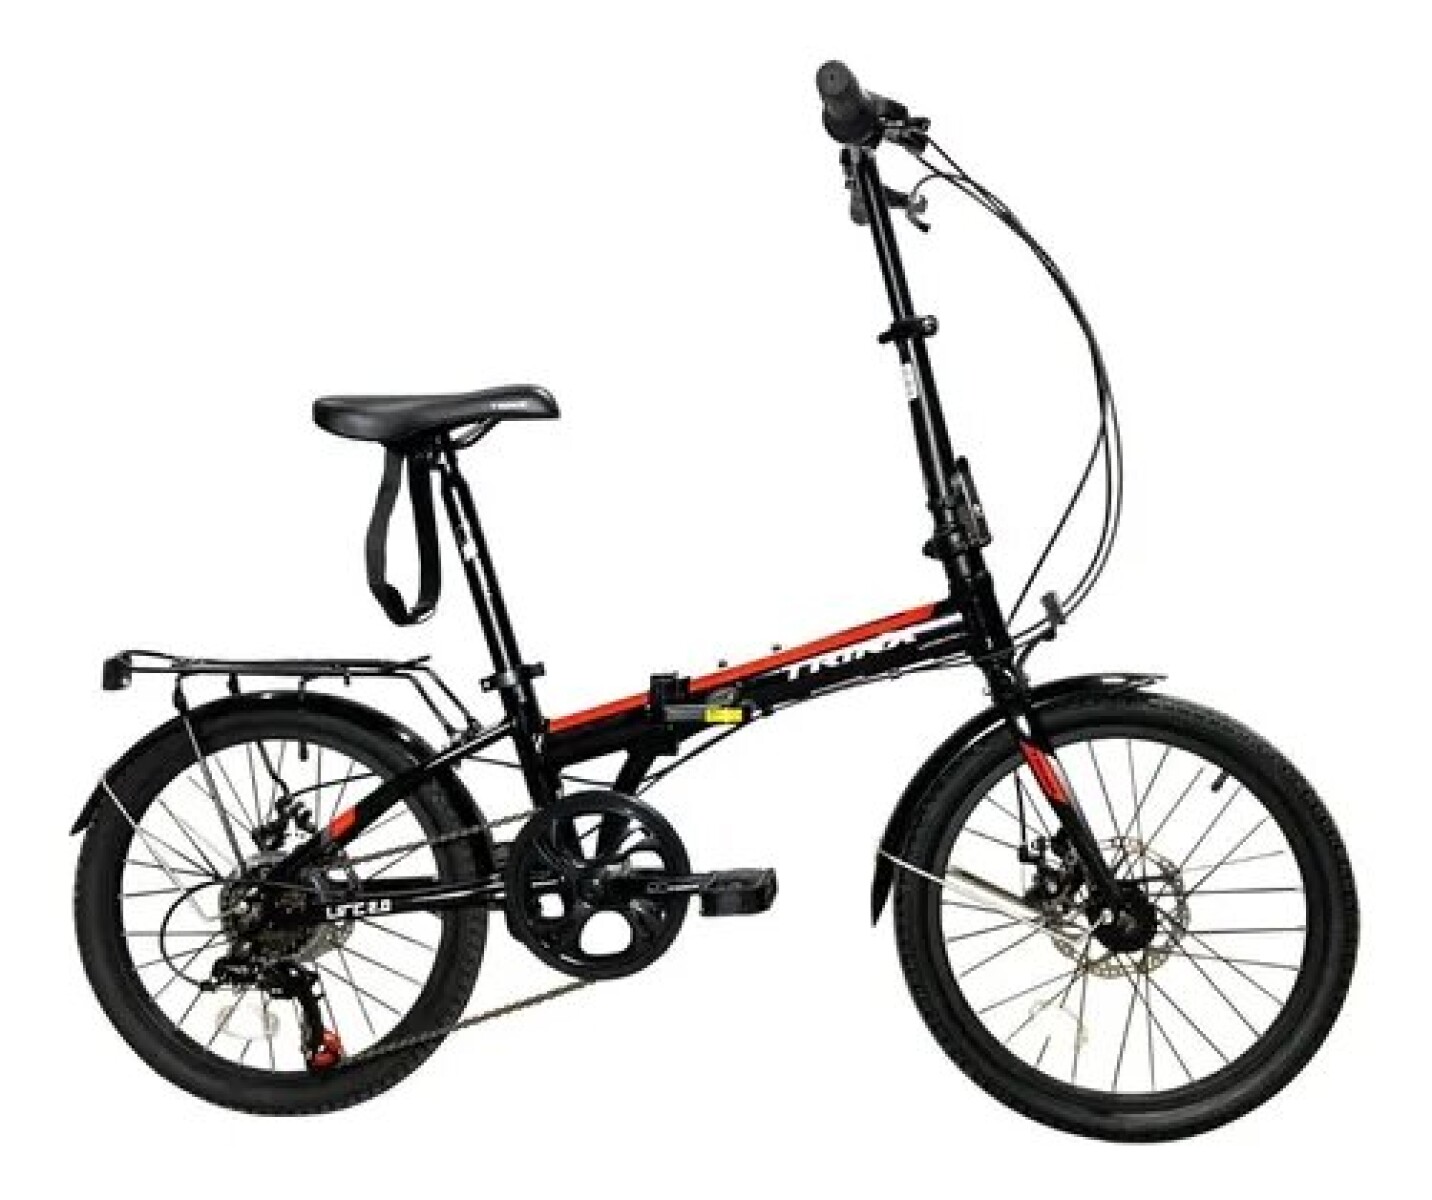 BICICLETA PLEGABLE TRINX LIFE2.0 RODADO 20 ALUMINIO SHIMANO - Bicicleta Plegable Trinx Life2.0 Rodado 20 Aluminio Shimano 